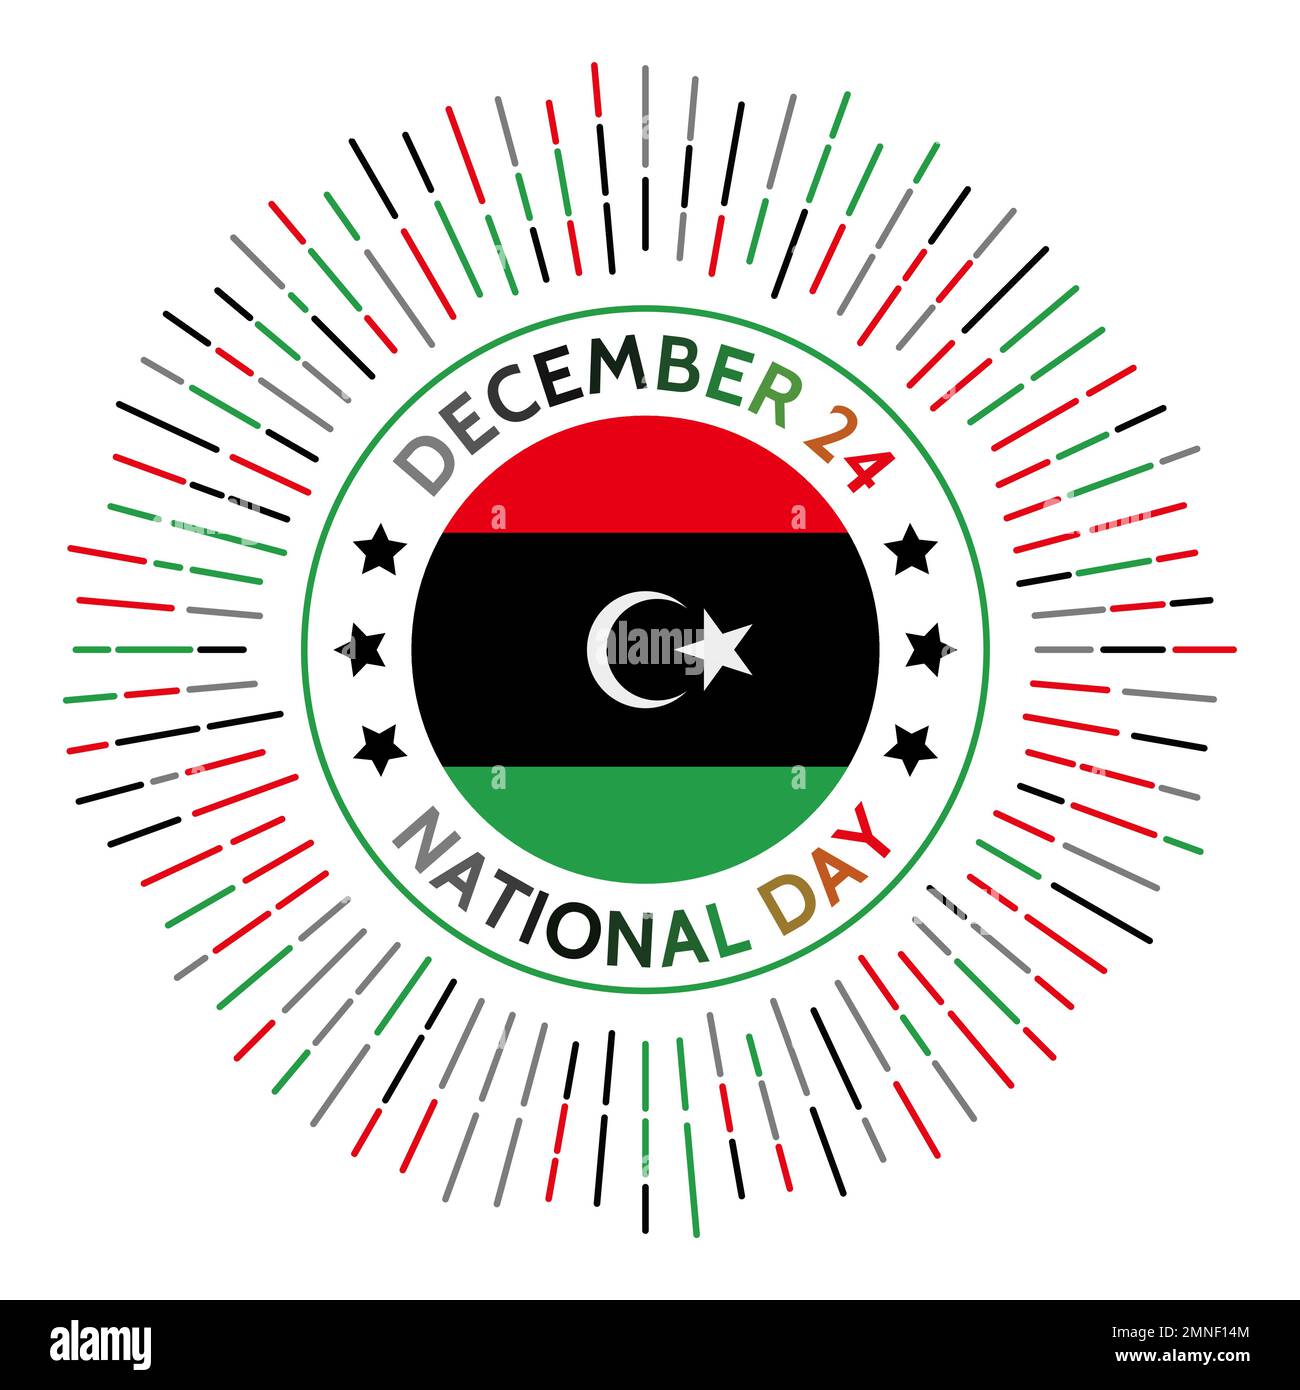 Libyscher Nationalfeiertag. Unabhängigkeit von Italien am 10. Februar 1947, Freilassung von Briten und Franzosen am 24. Dezember 1951. Gefeiert am 2. Dezember Stock Vektor